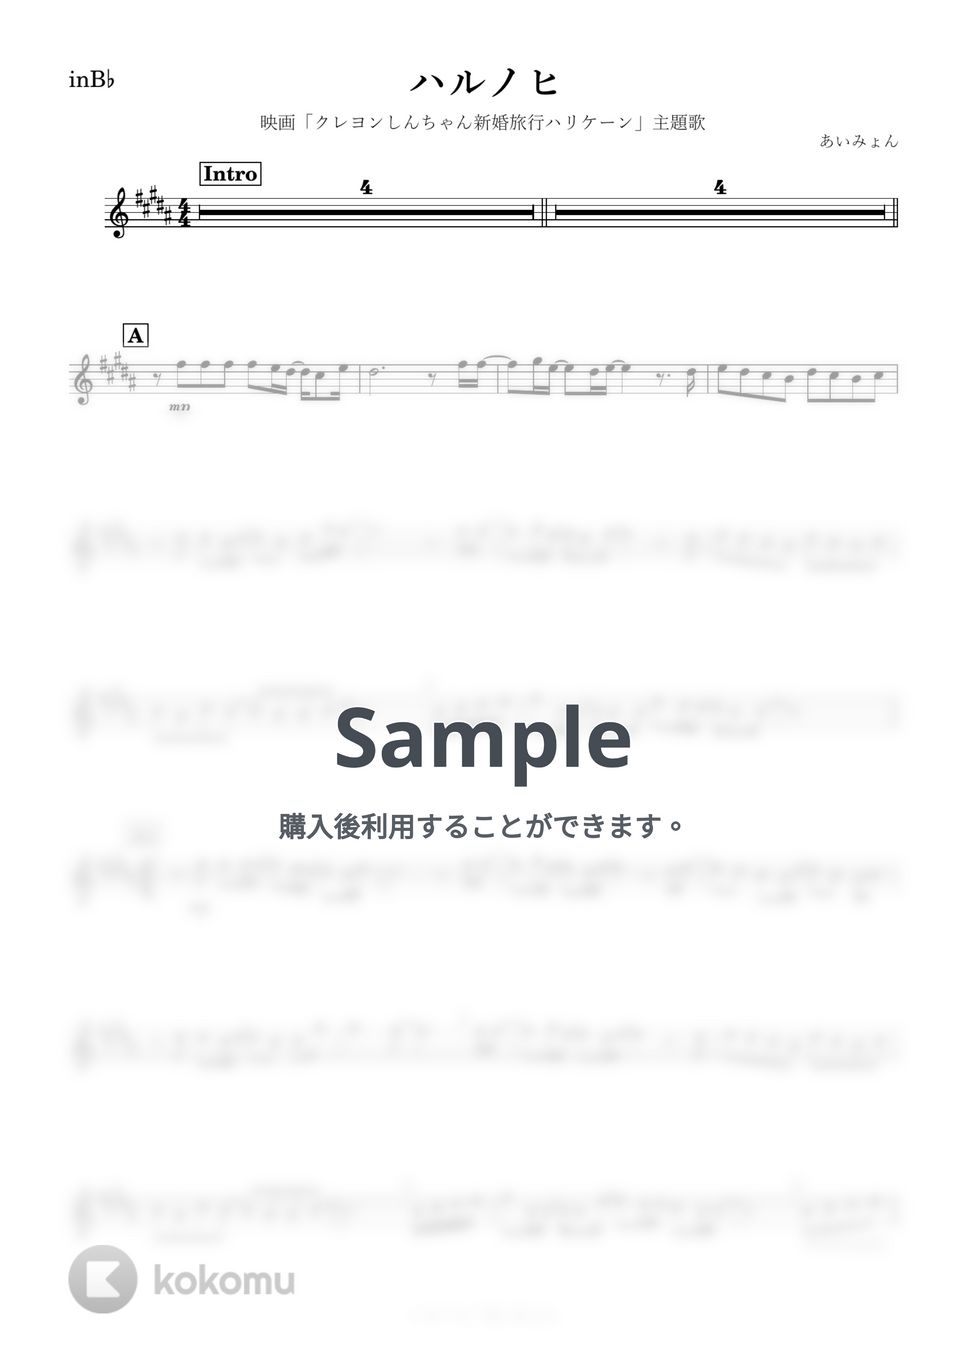 あいみょん - ハルノヒ (B♭) by kanamusic